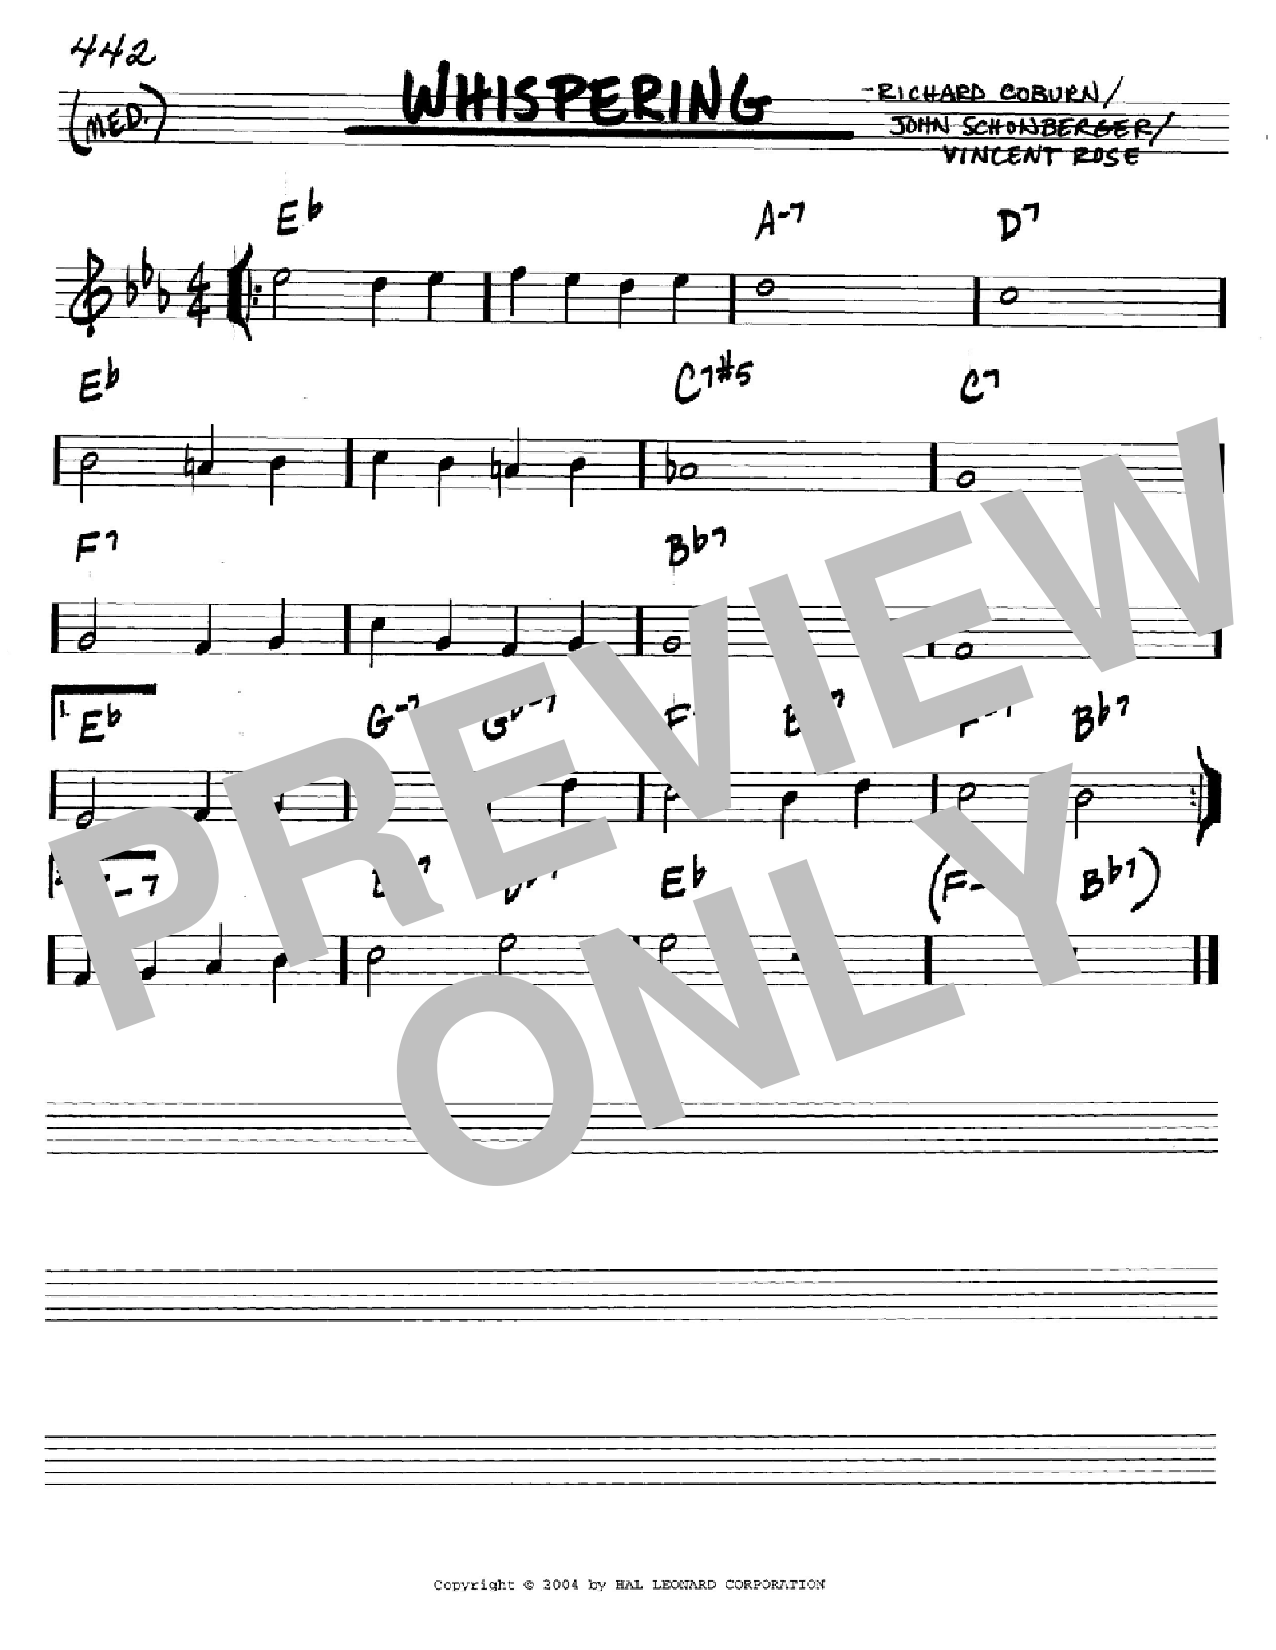 Download Richard Coburn Whispering Sheet Music